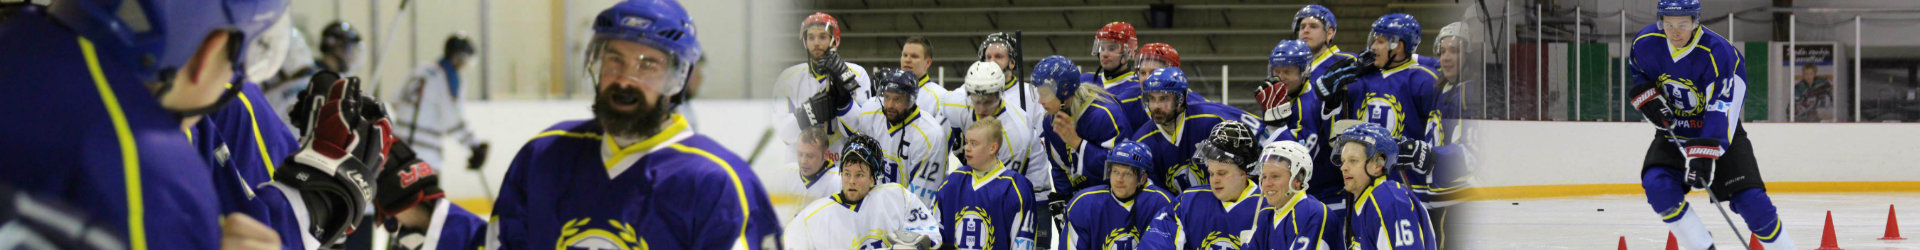 Jääkiekon maailmanmestareita voi nähdä Tapanilan Urheilukeskuksessa lauantaina 2.5!